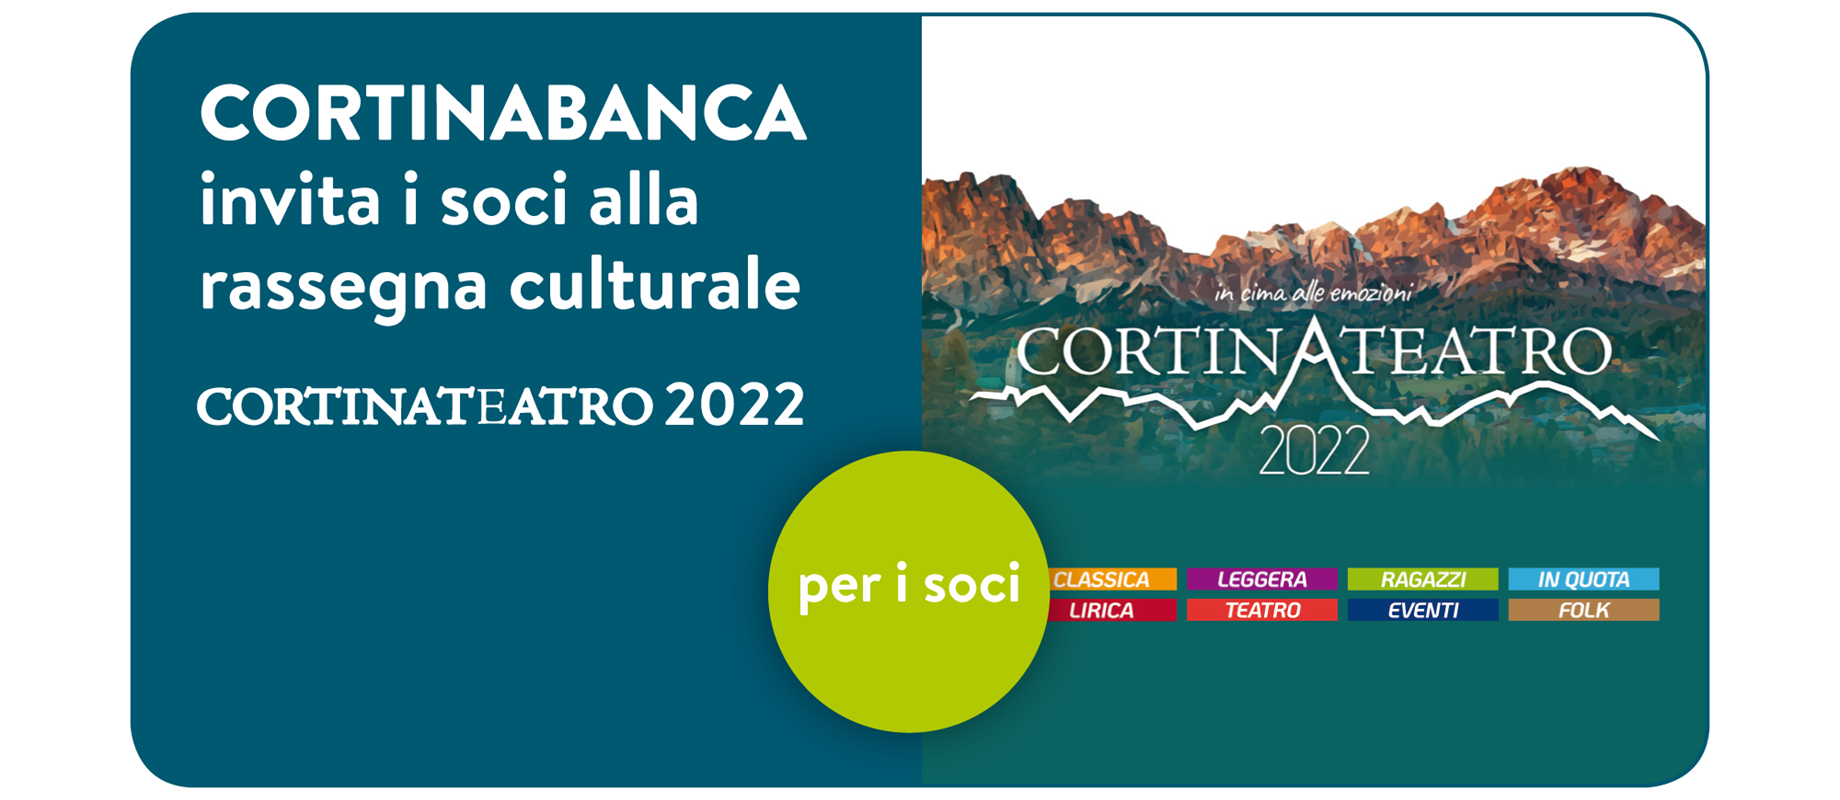 CORTINABANCA invita i soci alla rassegna CortinAteatro 2022! 